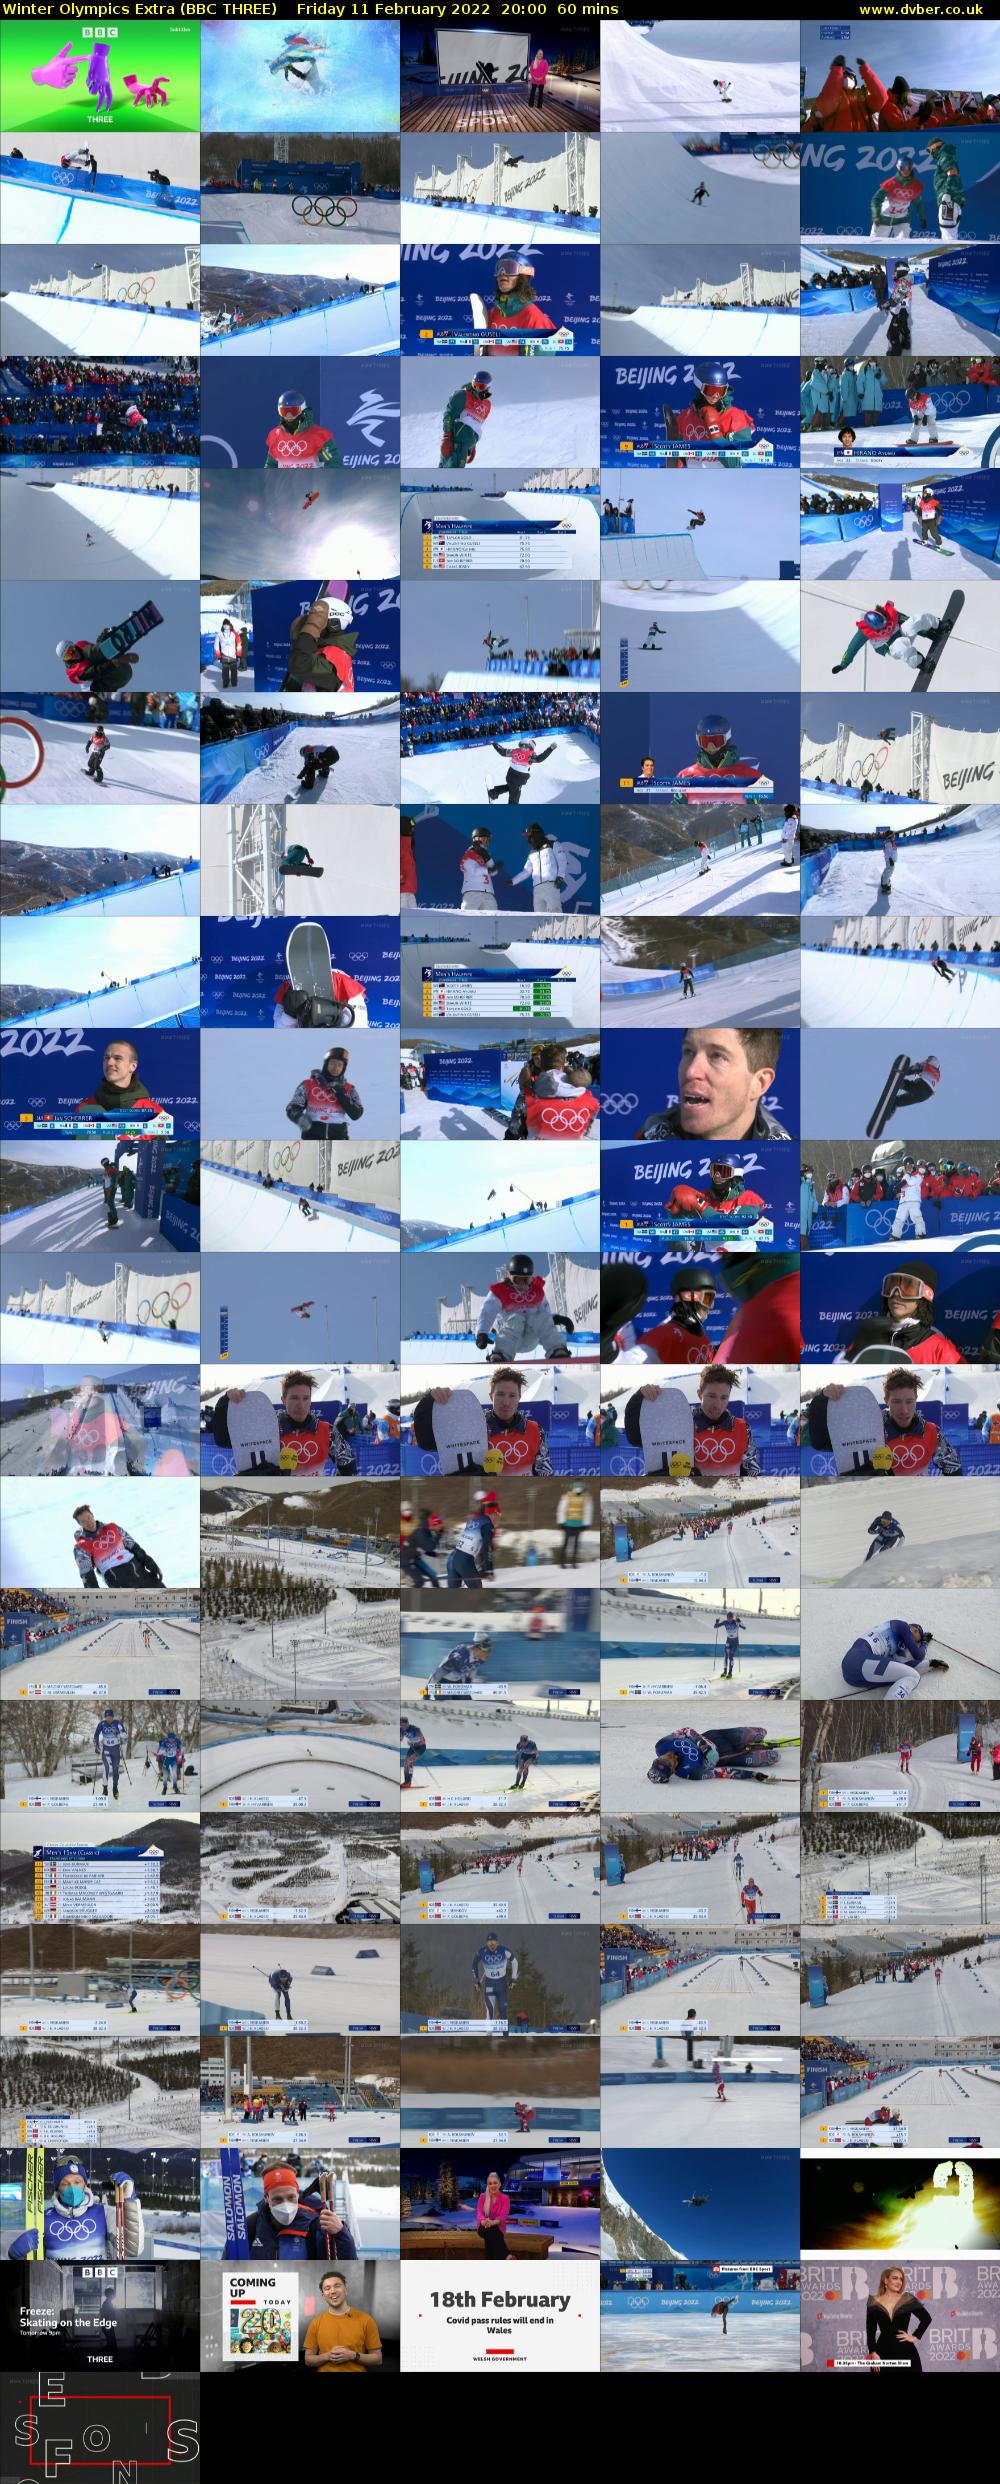 Winter Olympics Extra (BBC THREE) Friday 11 February 2022 20:00 - 21:00